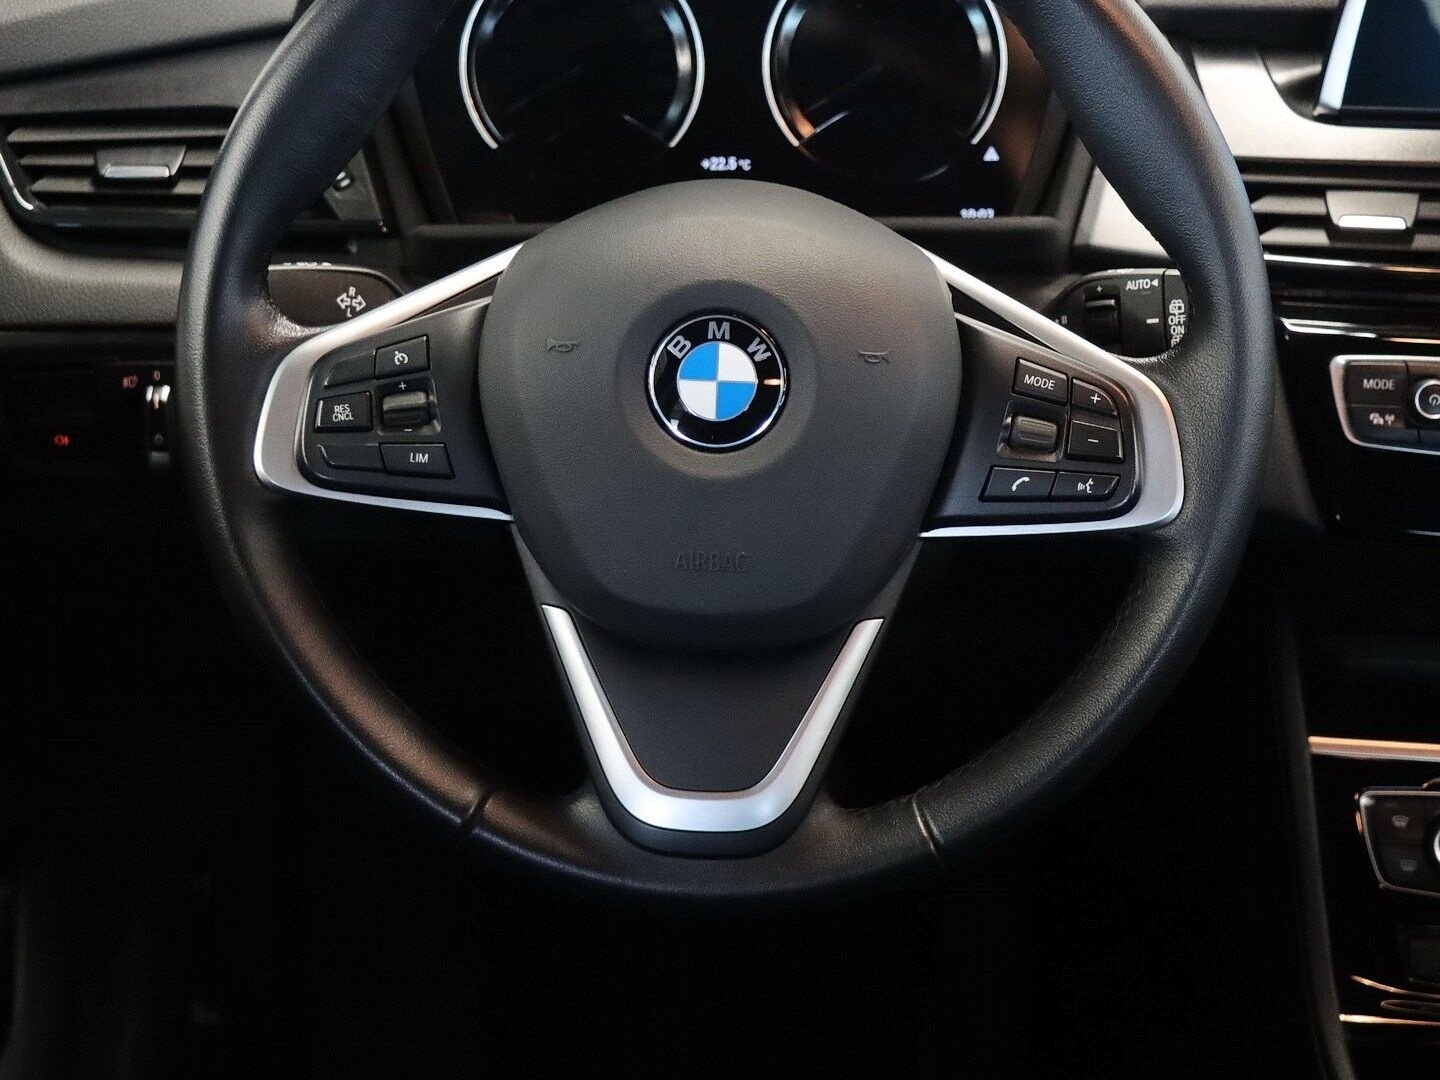 BMW 218i 